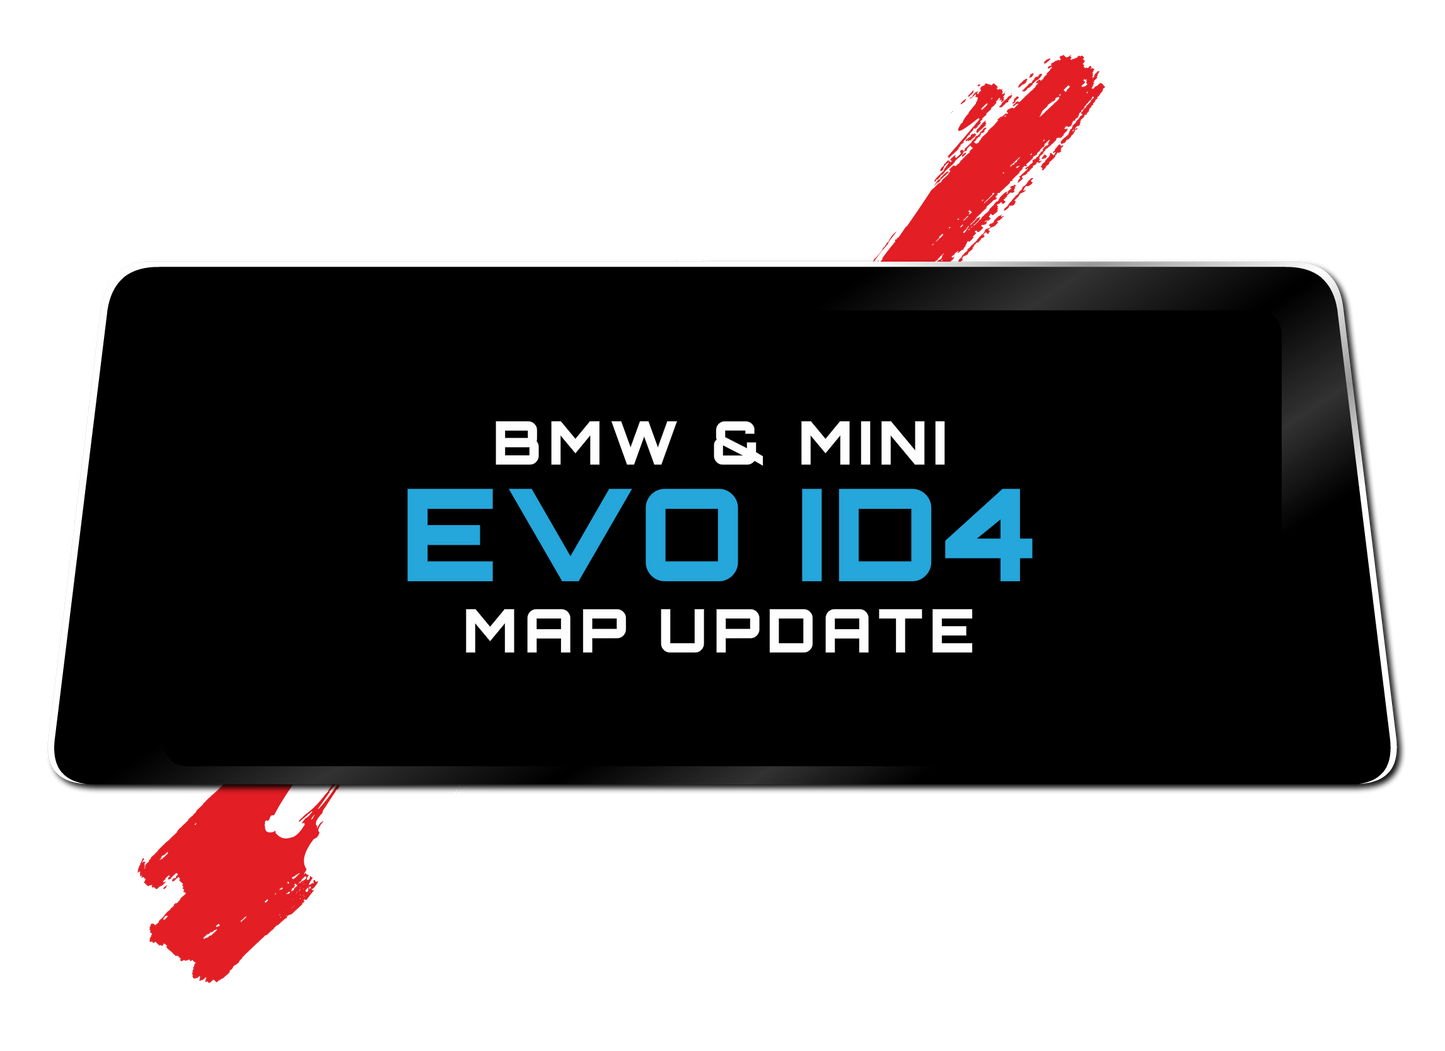 bmw and mini evo id4 map update